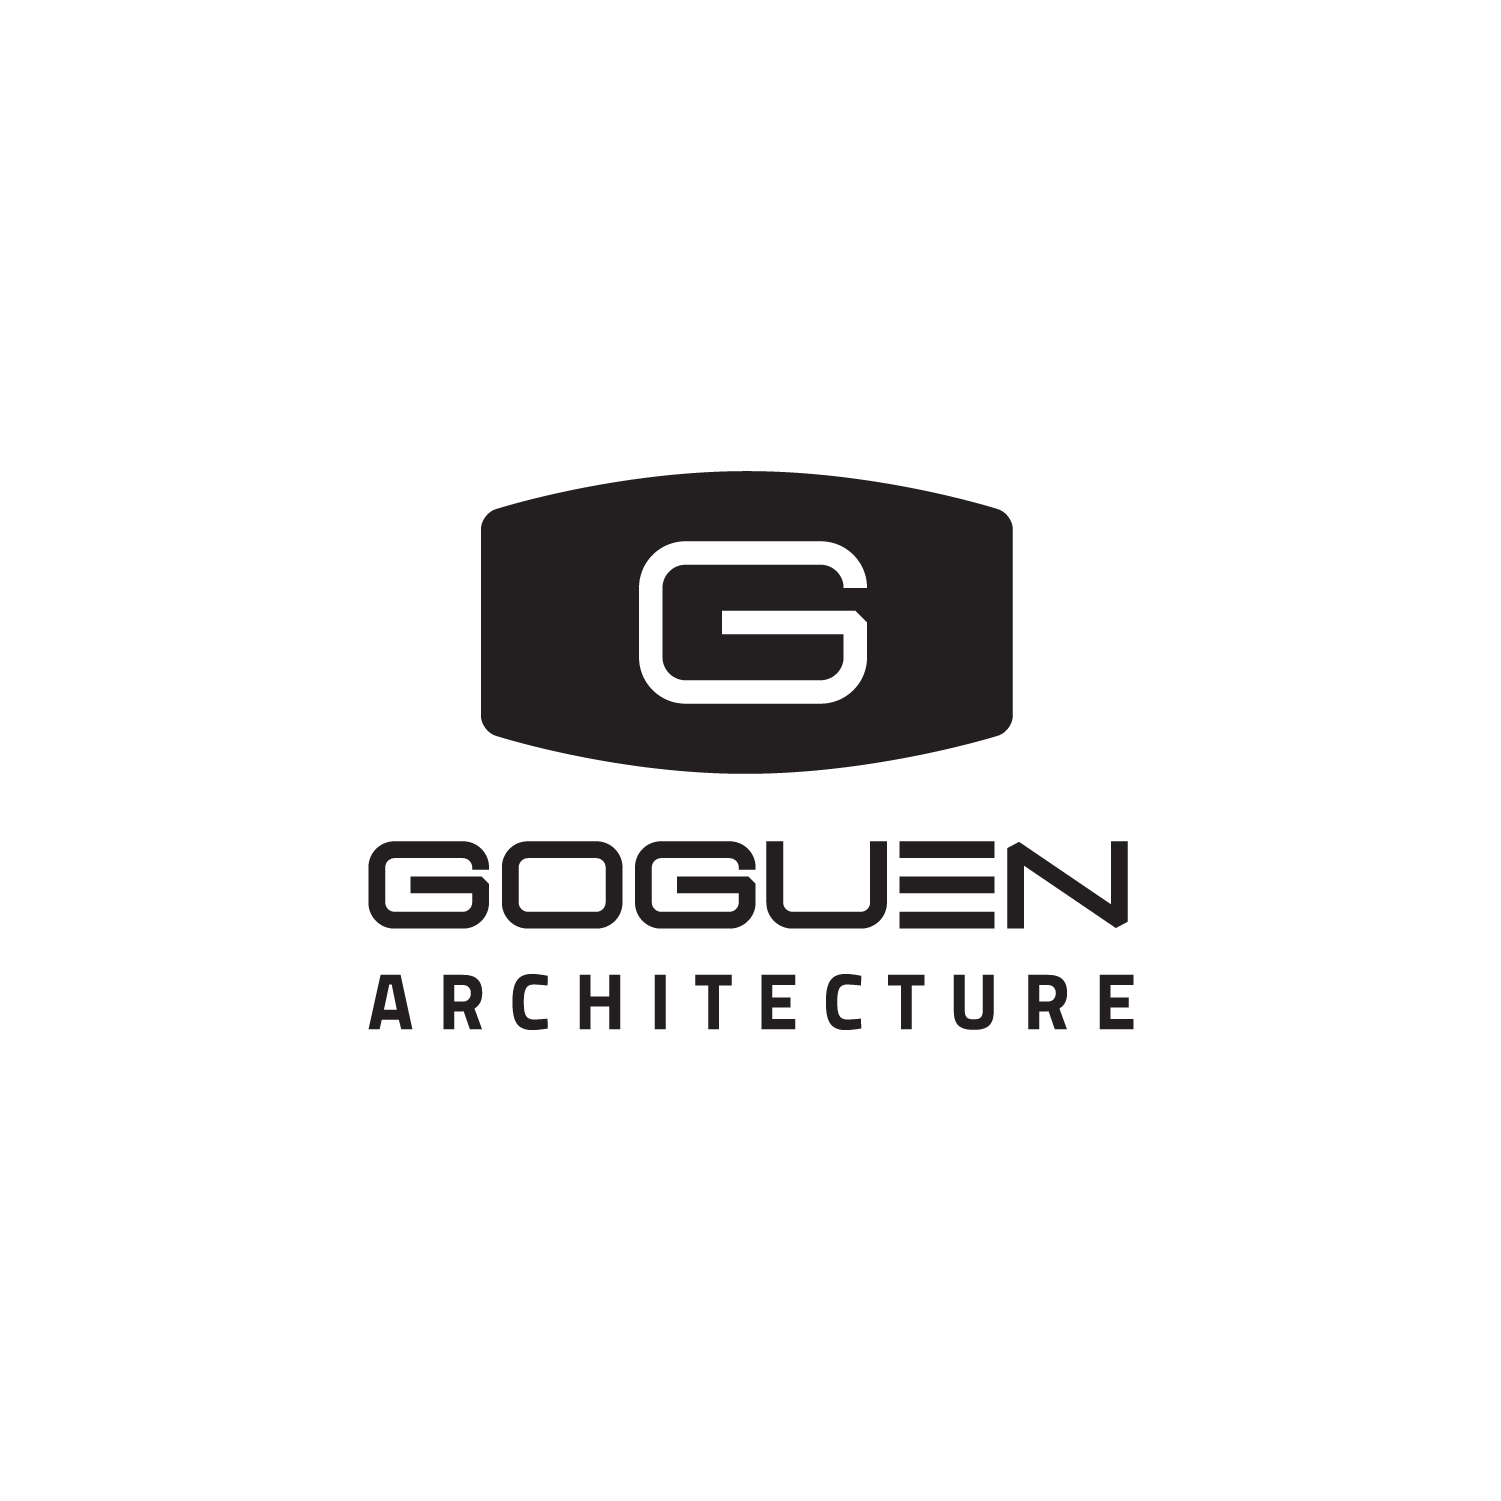 Goguen Architecture.png